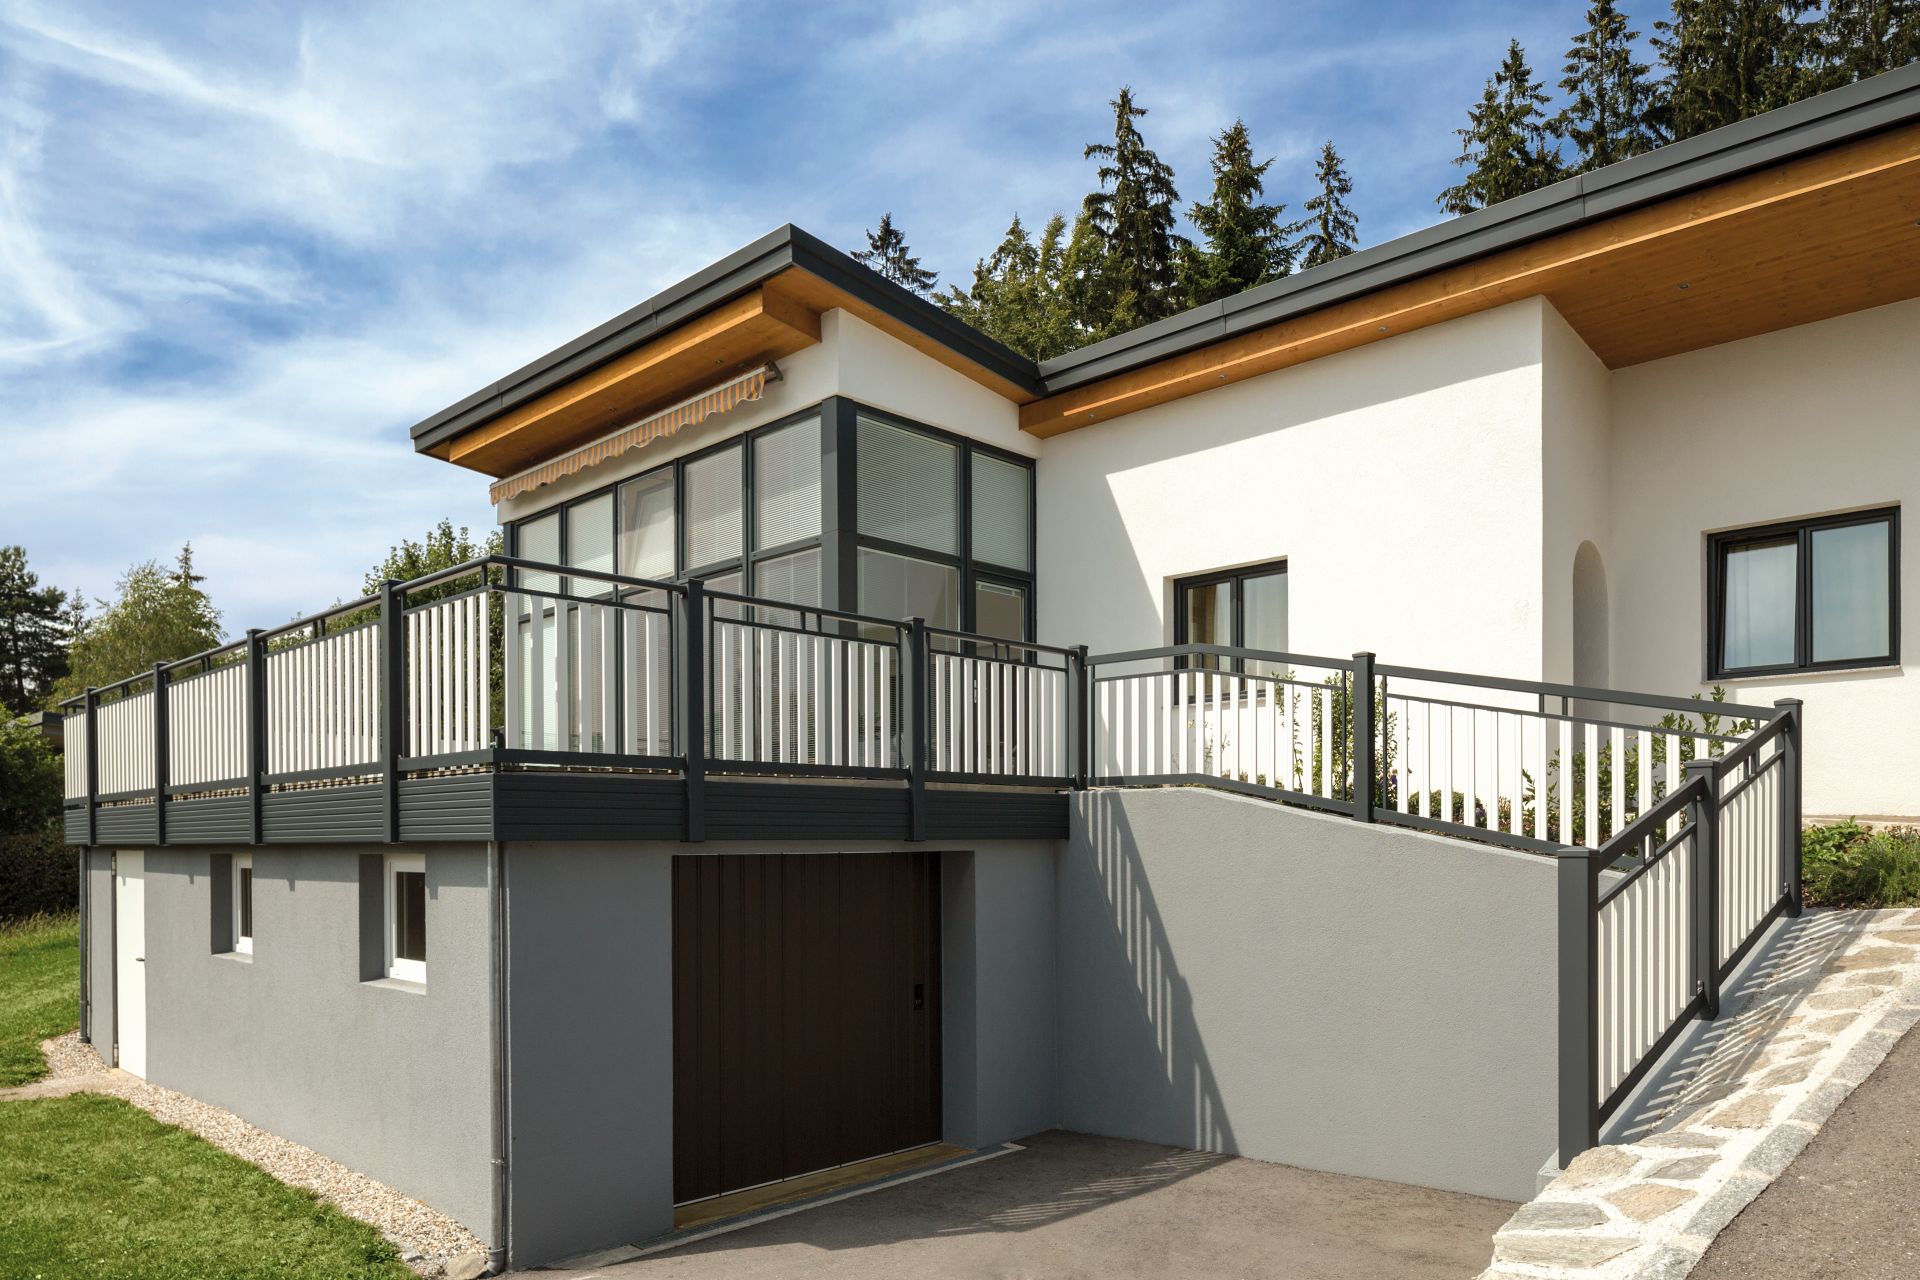 Balkon mit weißen Latten und schwarzer Rahmenoptik, Modell Roma standard, auf modernem Haus mit Garage